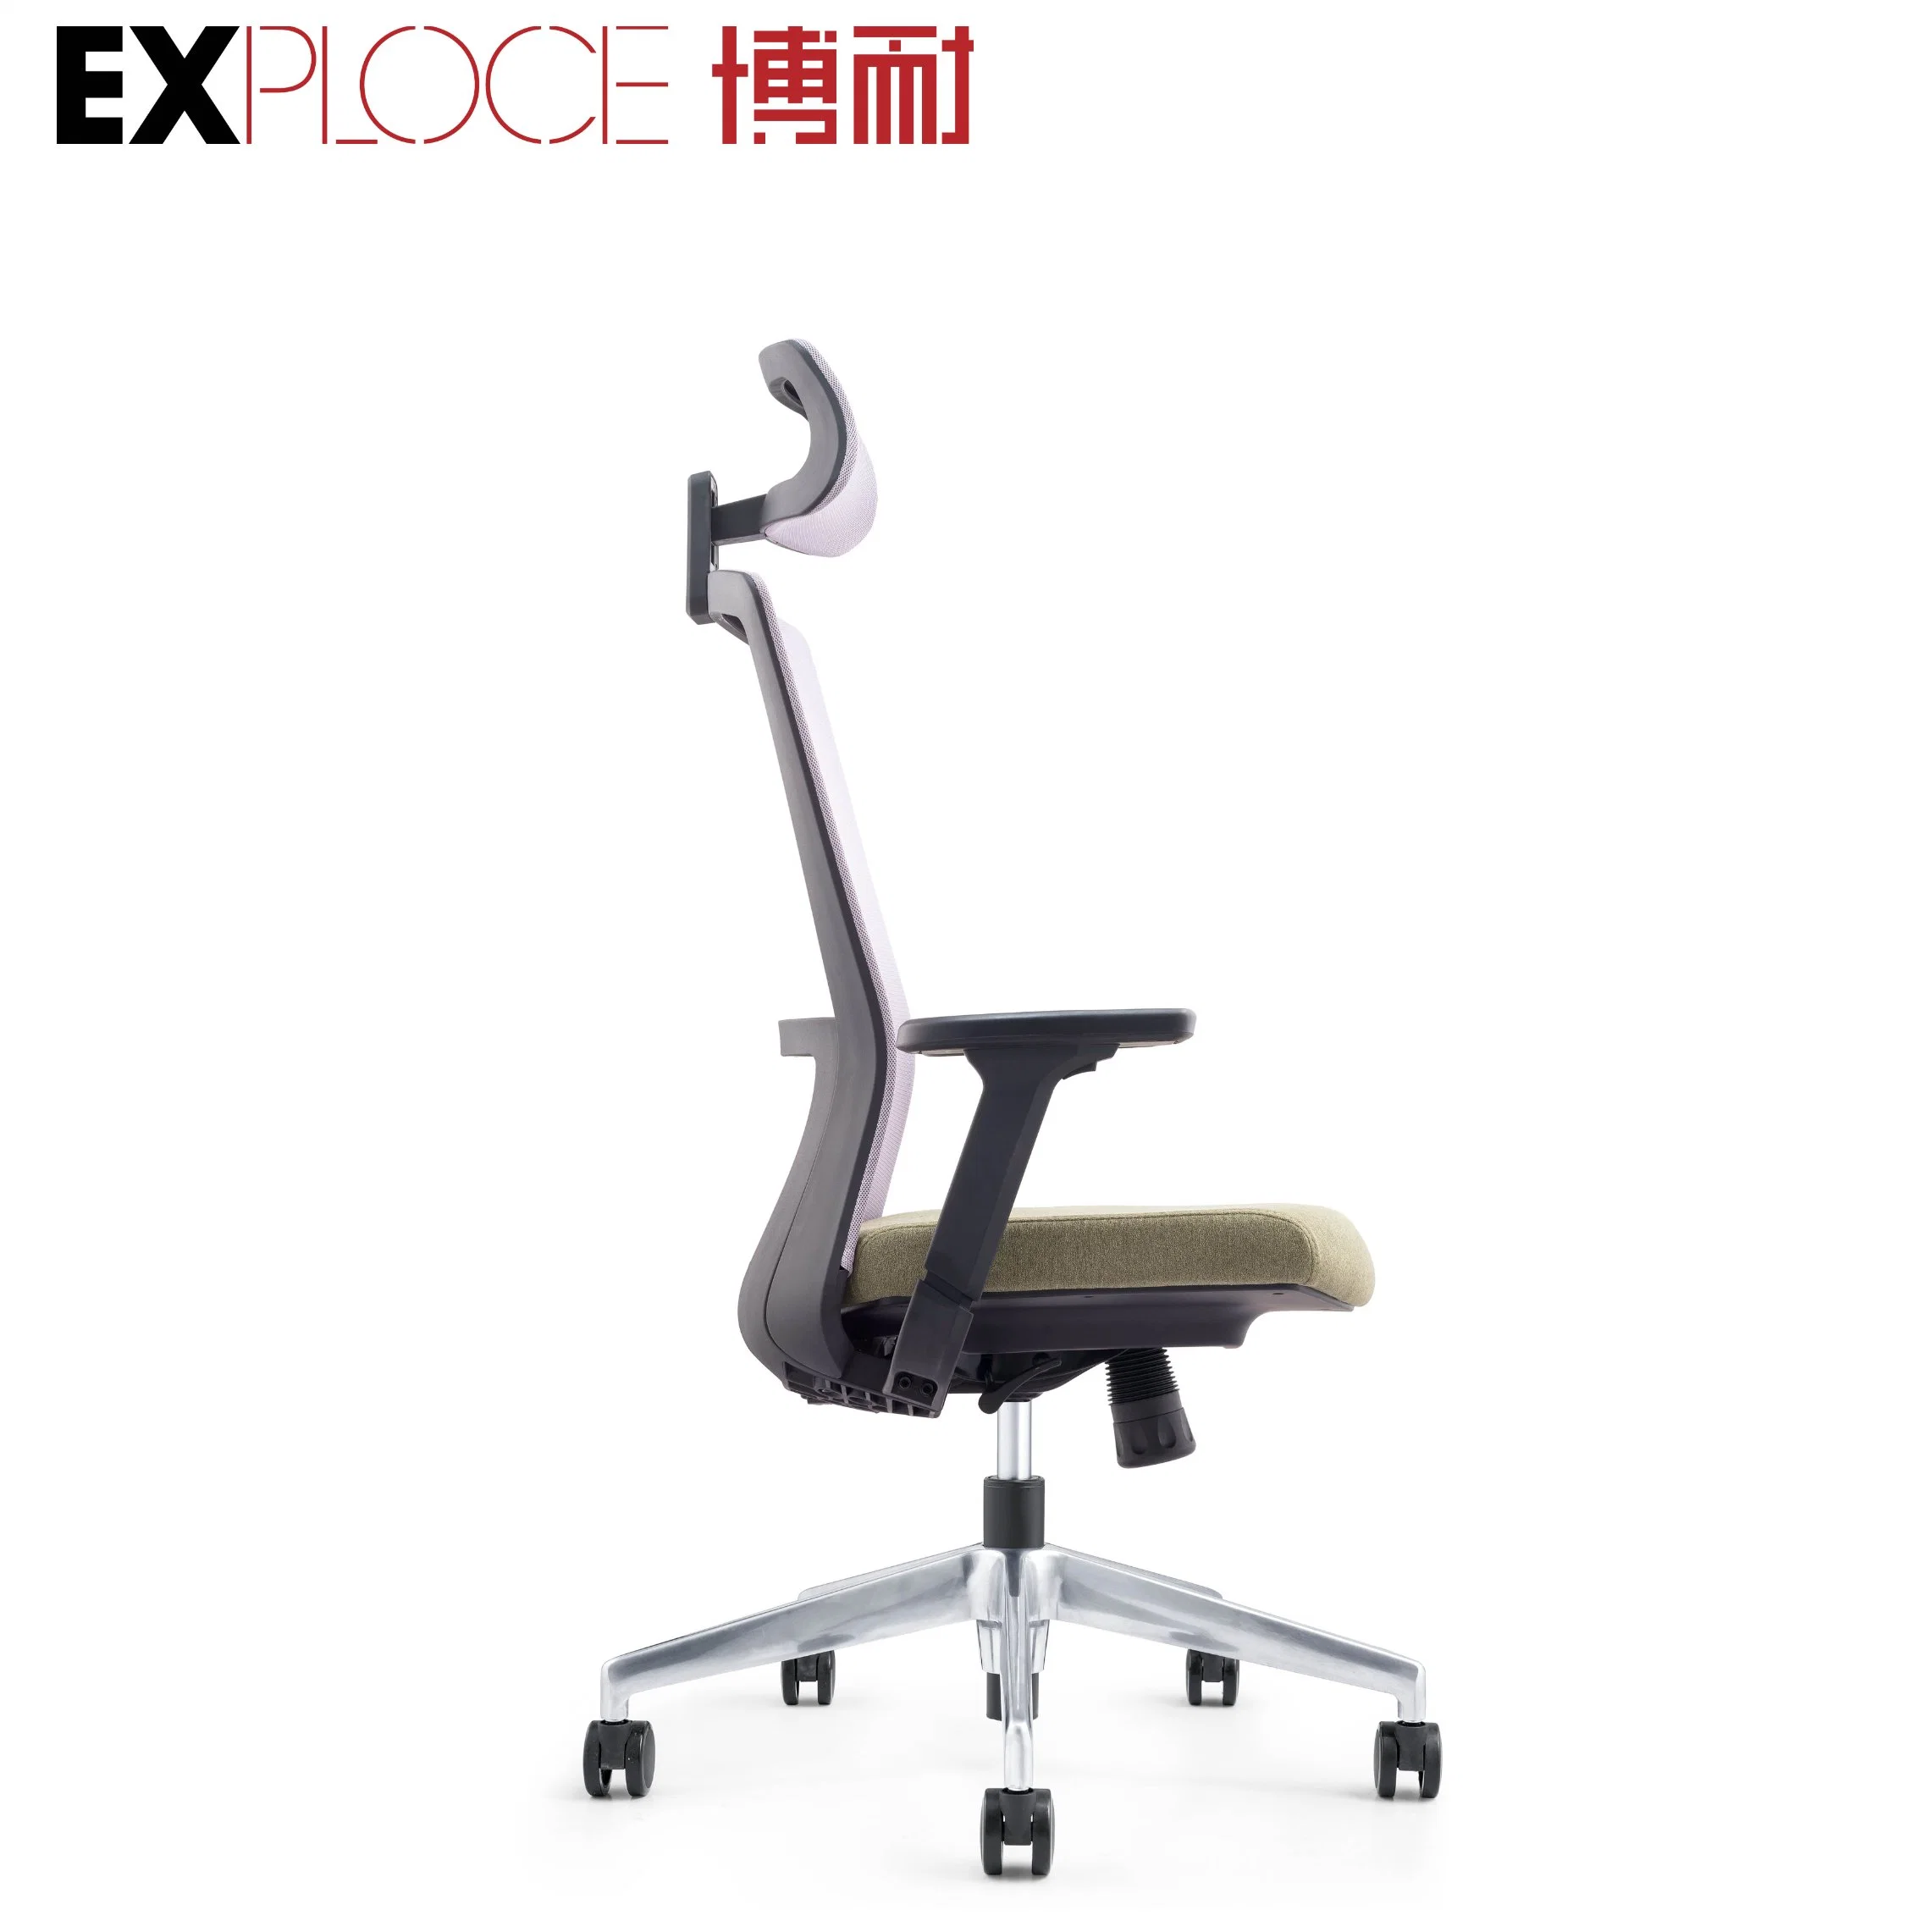 Malla de soporte lumbar ergonómico con respaldo alto giratorio Ejecutiva Silla de oficina Muebles